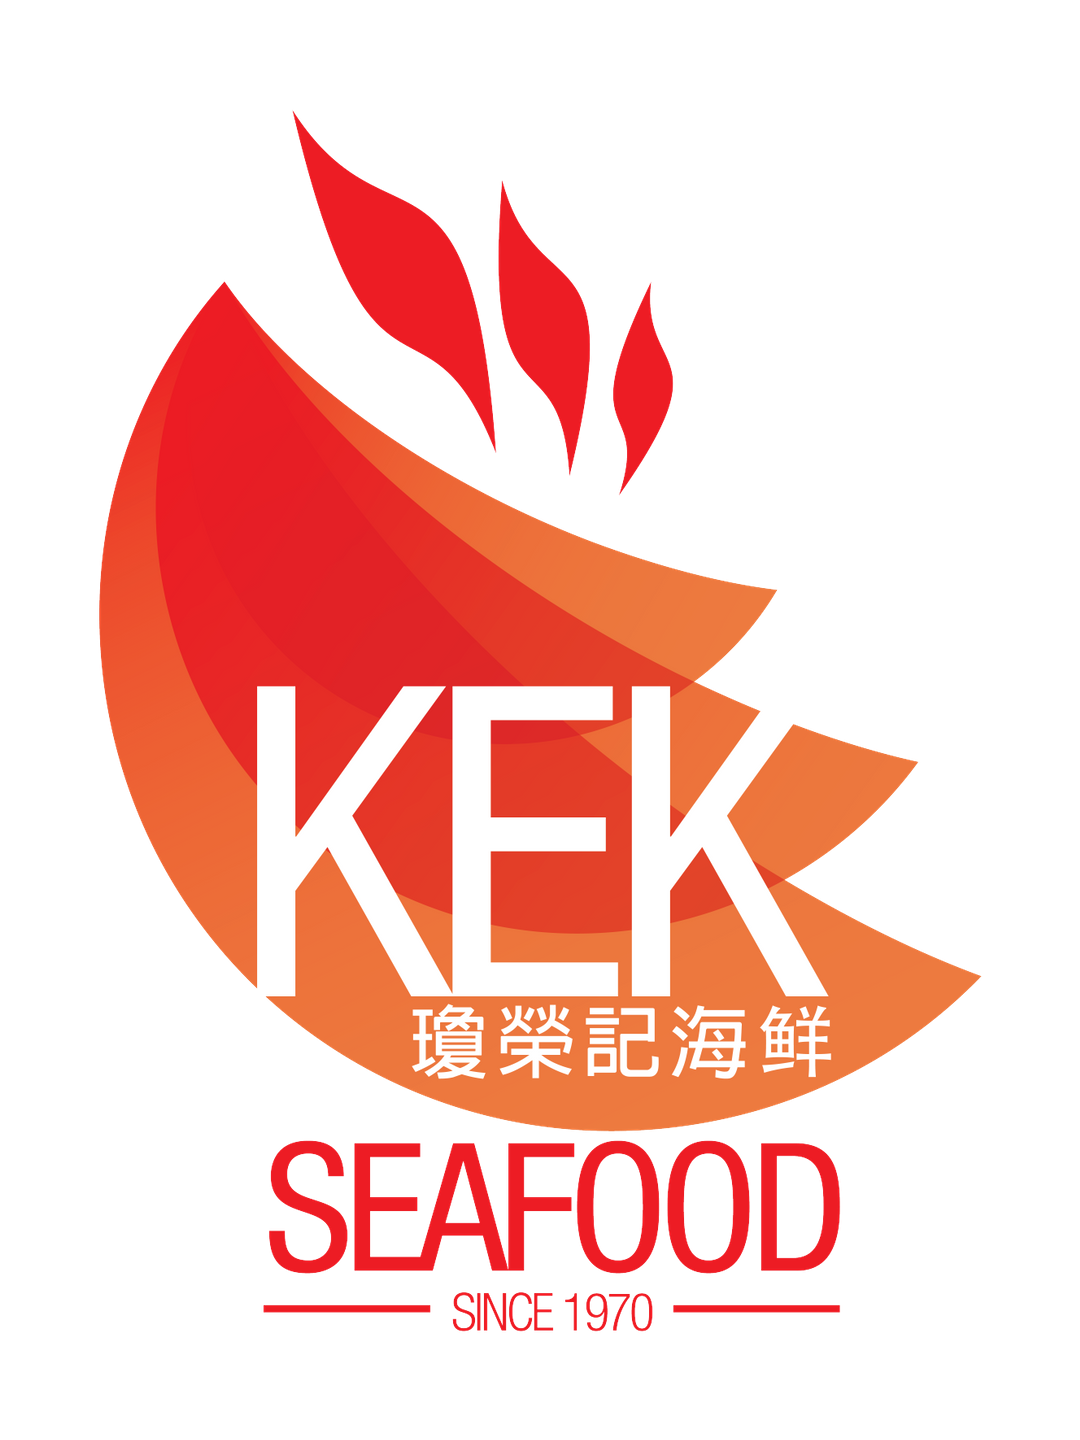 KEK Seafood